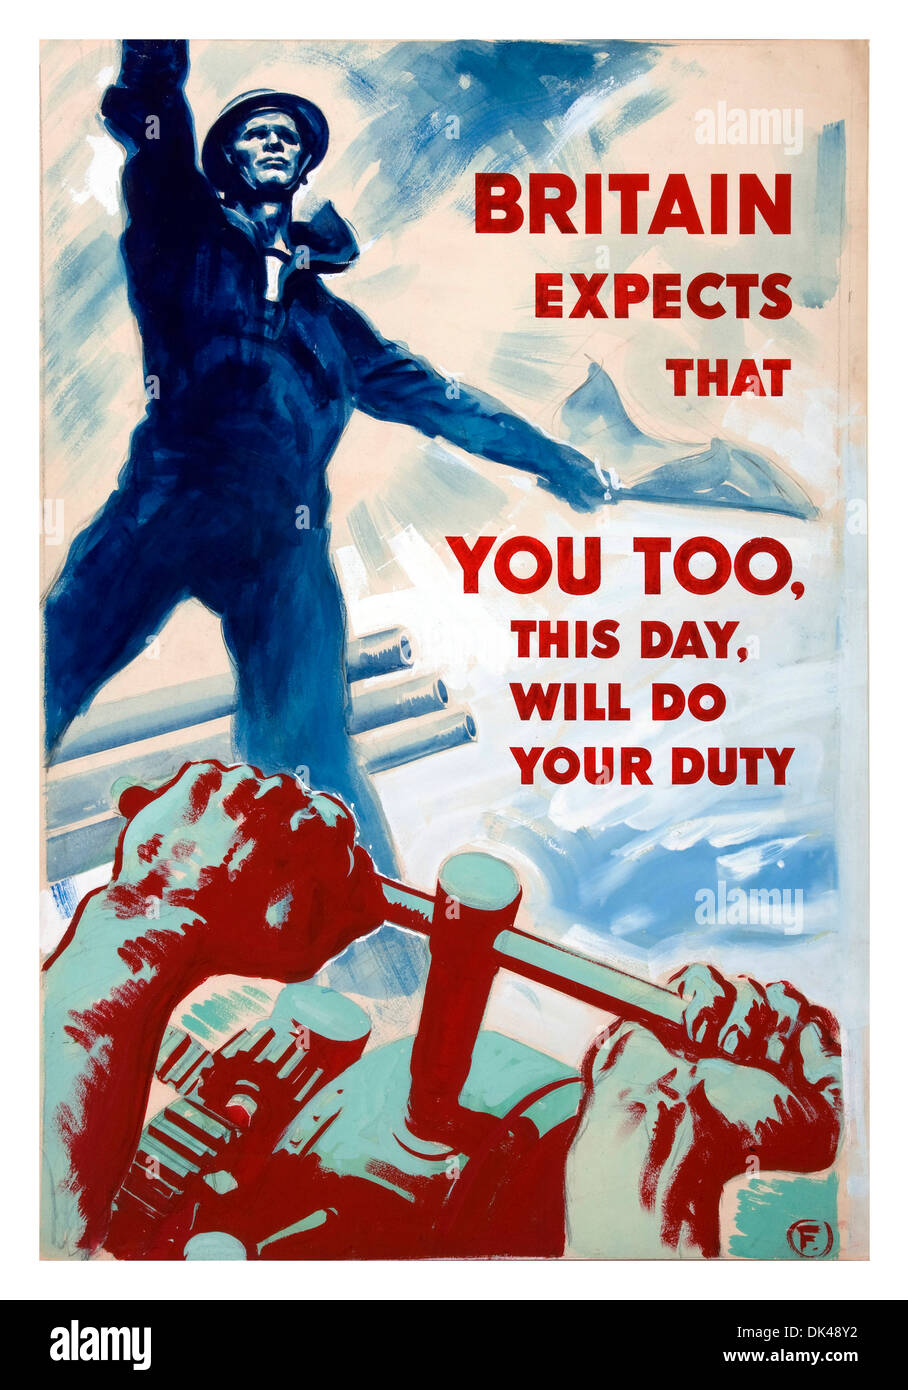 WW2 propaganda poster di promozione duro lavoro a casa nel Regno Unito durante il tempo di guerra utilizzando Signore Nelsons famose parole "la Gran Bretagna si aspetta...'. Foto Stock